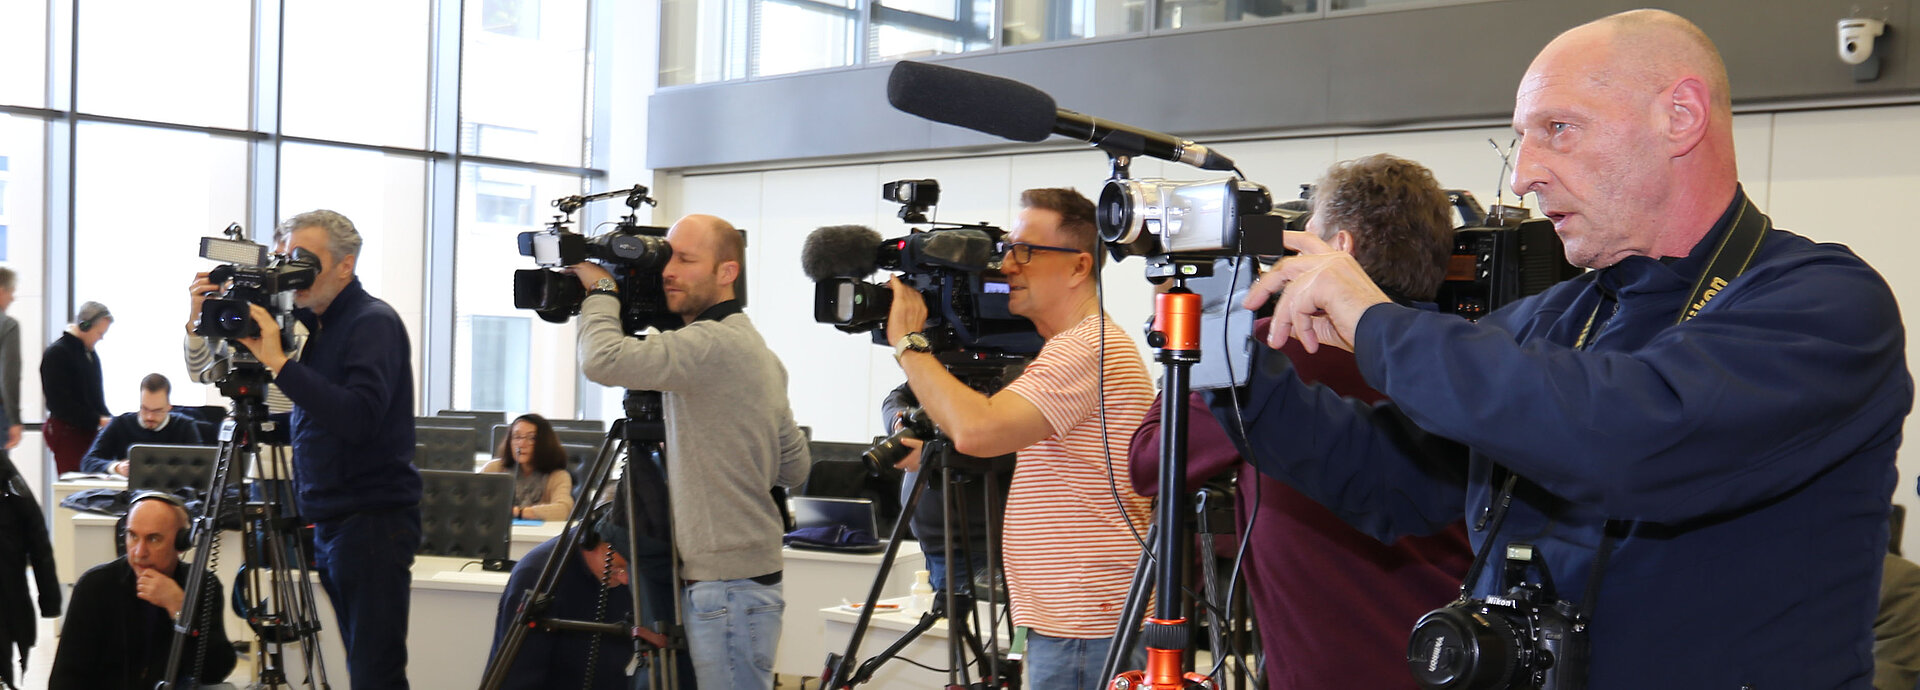 Bei einer Pressekonferenz: Es sind mehrere Kameramänner abgebildet. 